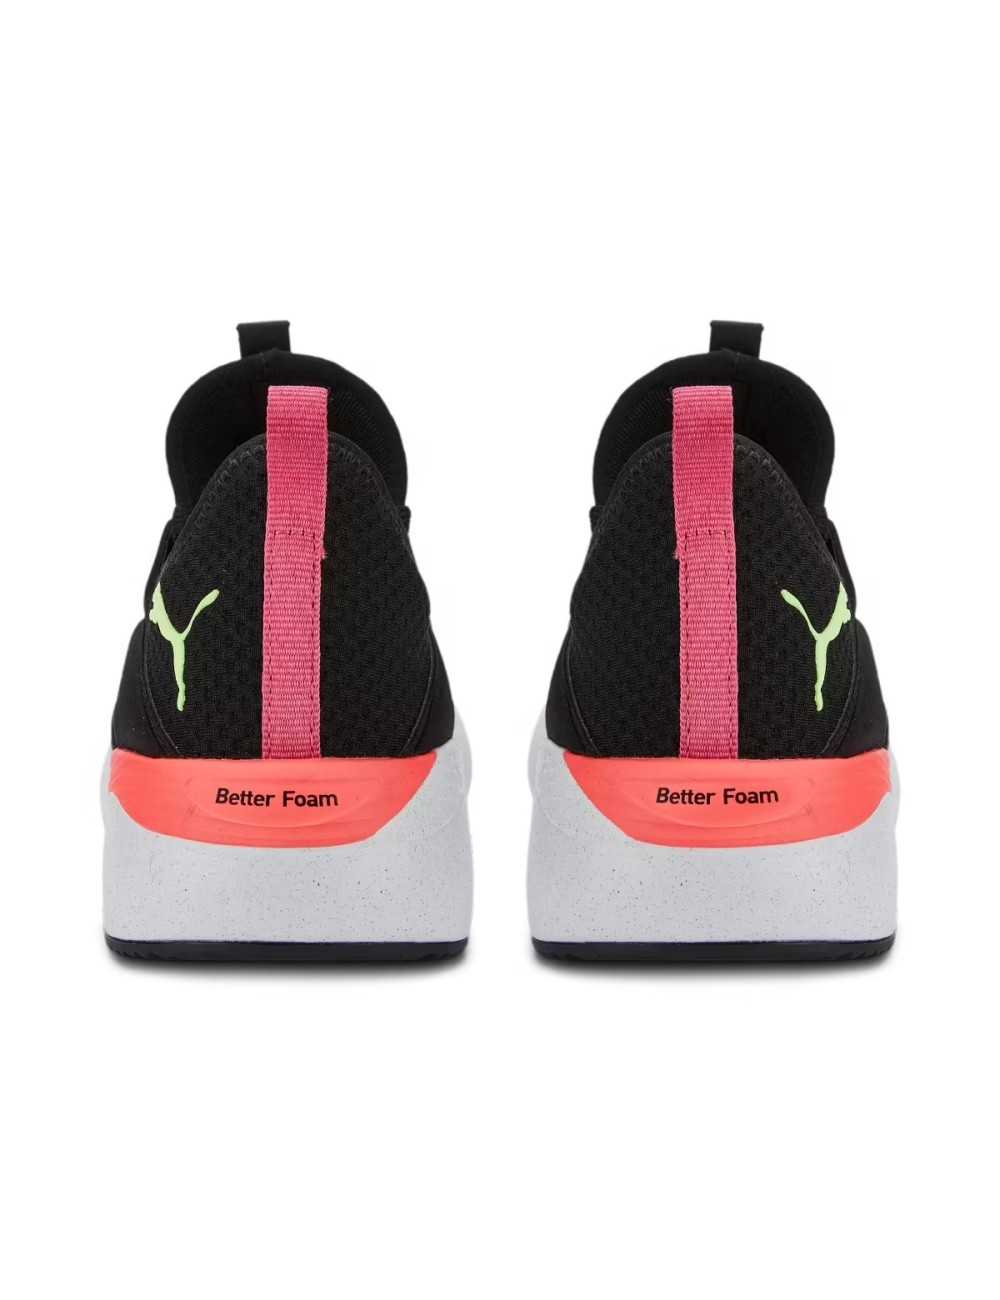 Puma Better Foam Adore scarpe running donna black pink - Scarpe Donna Sportive